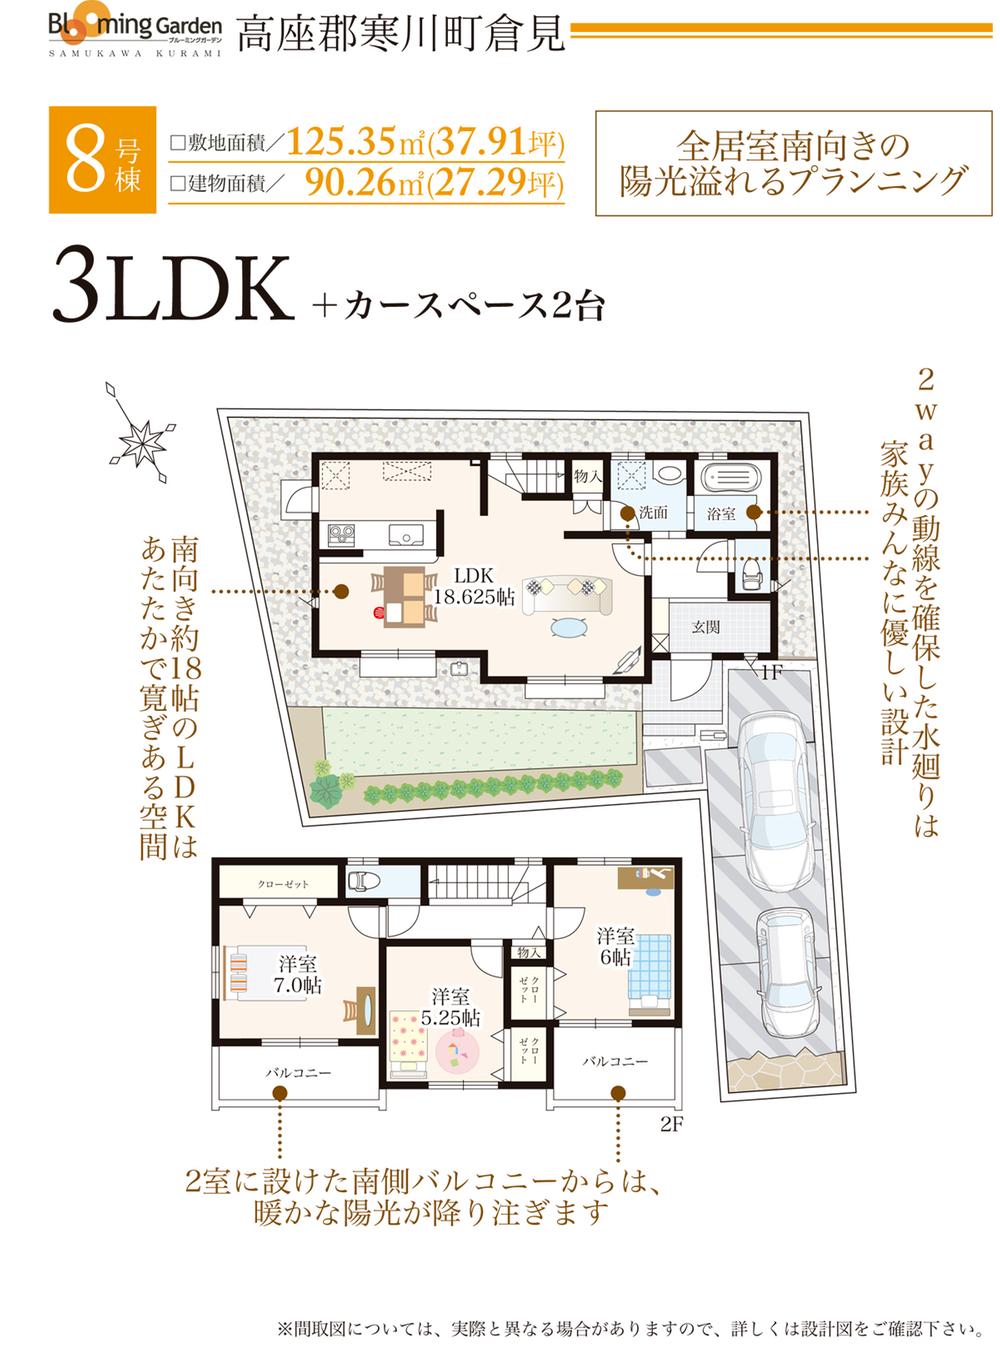 Floor plan. 8 Building